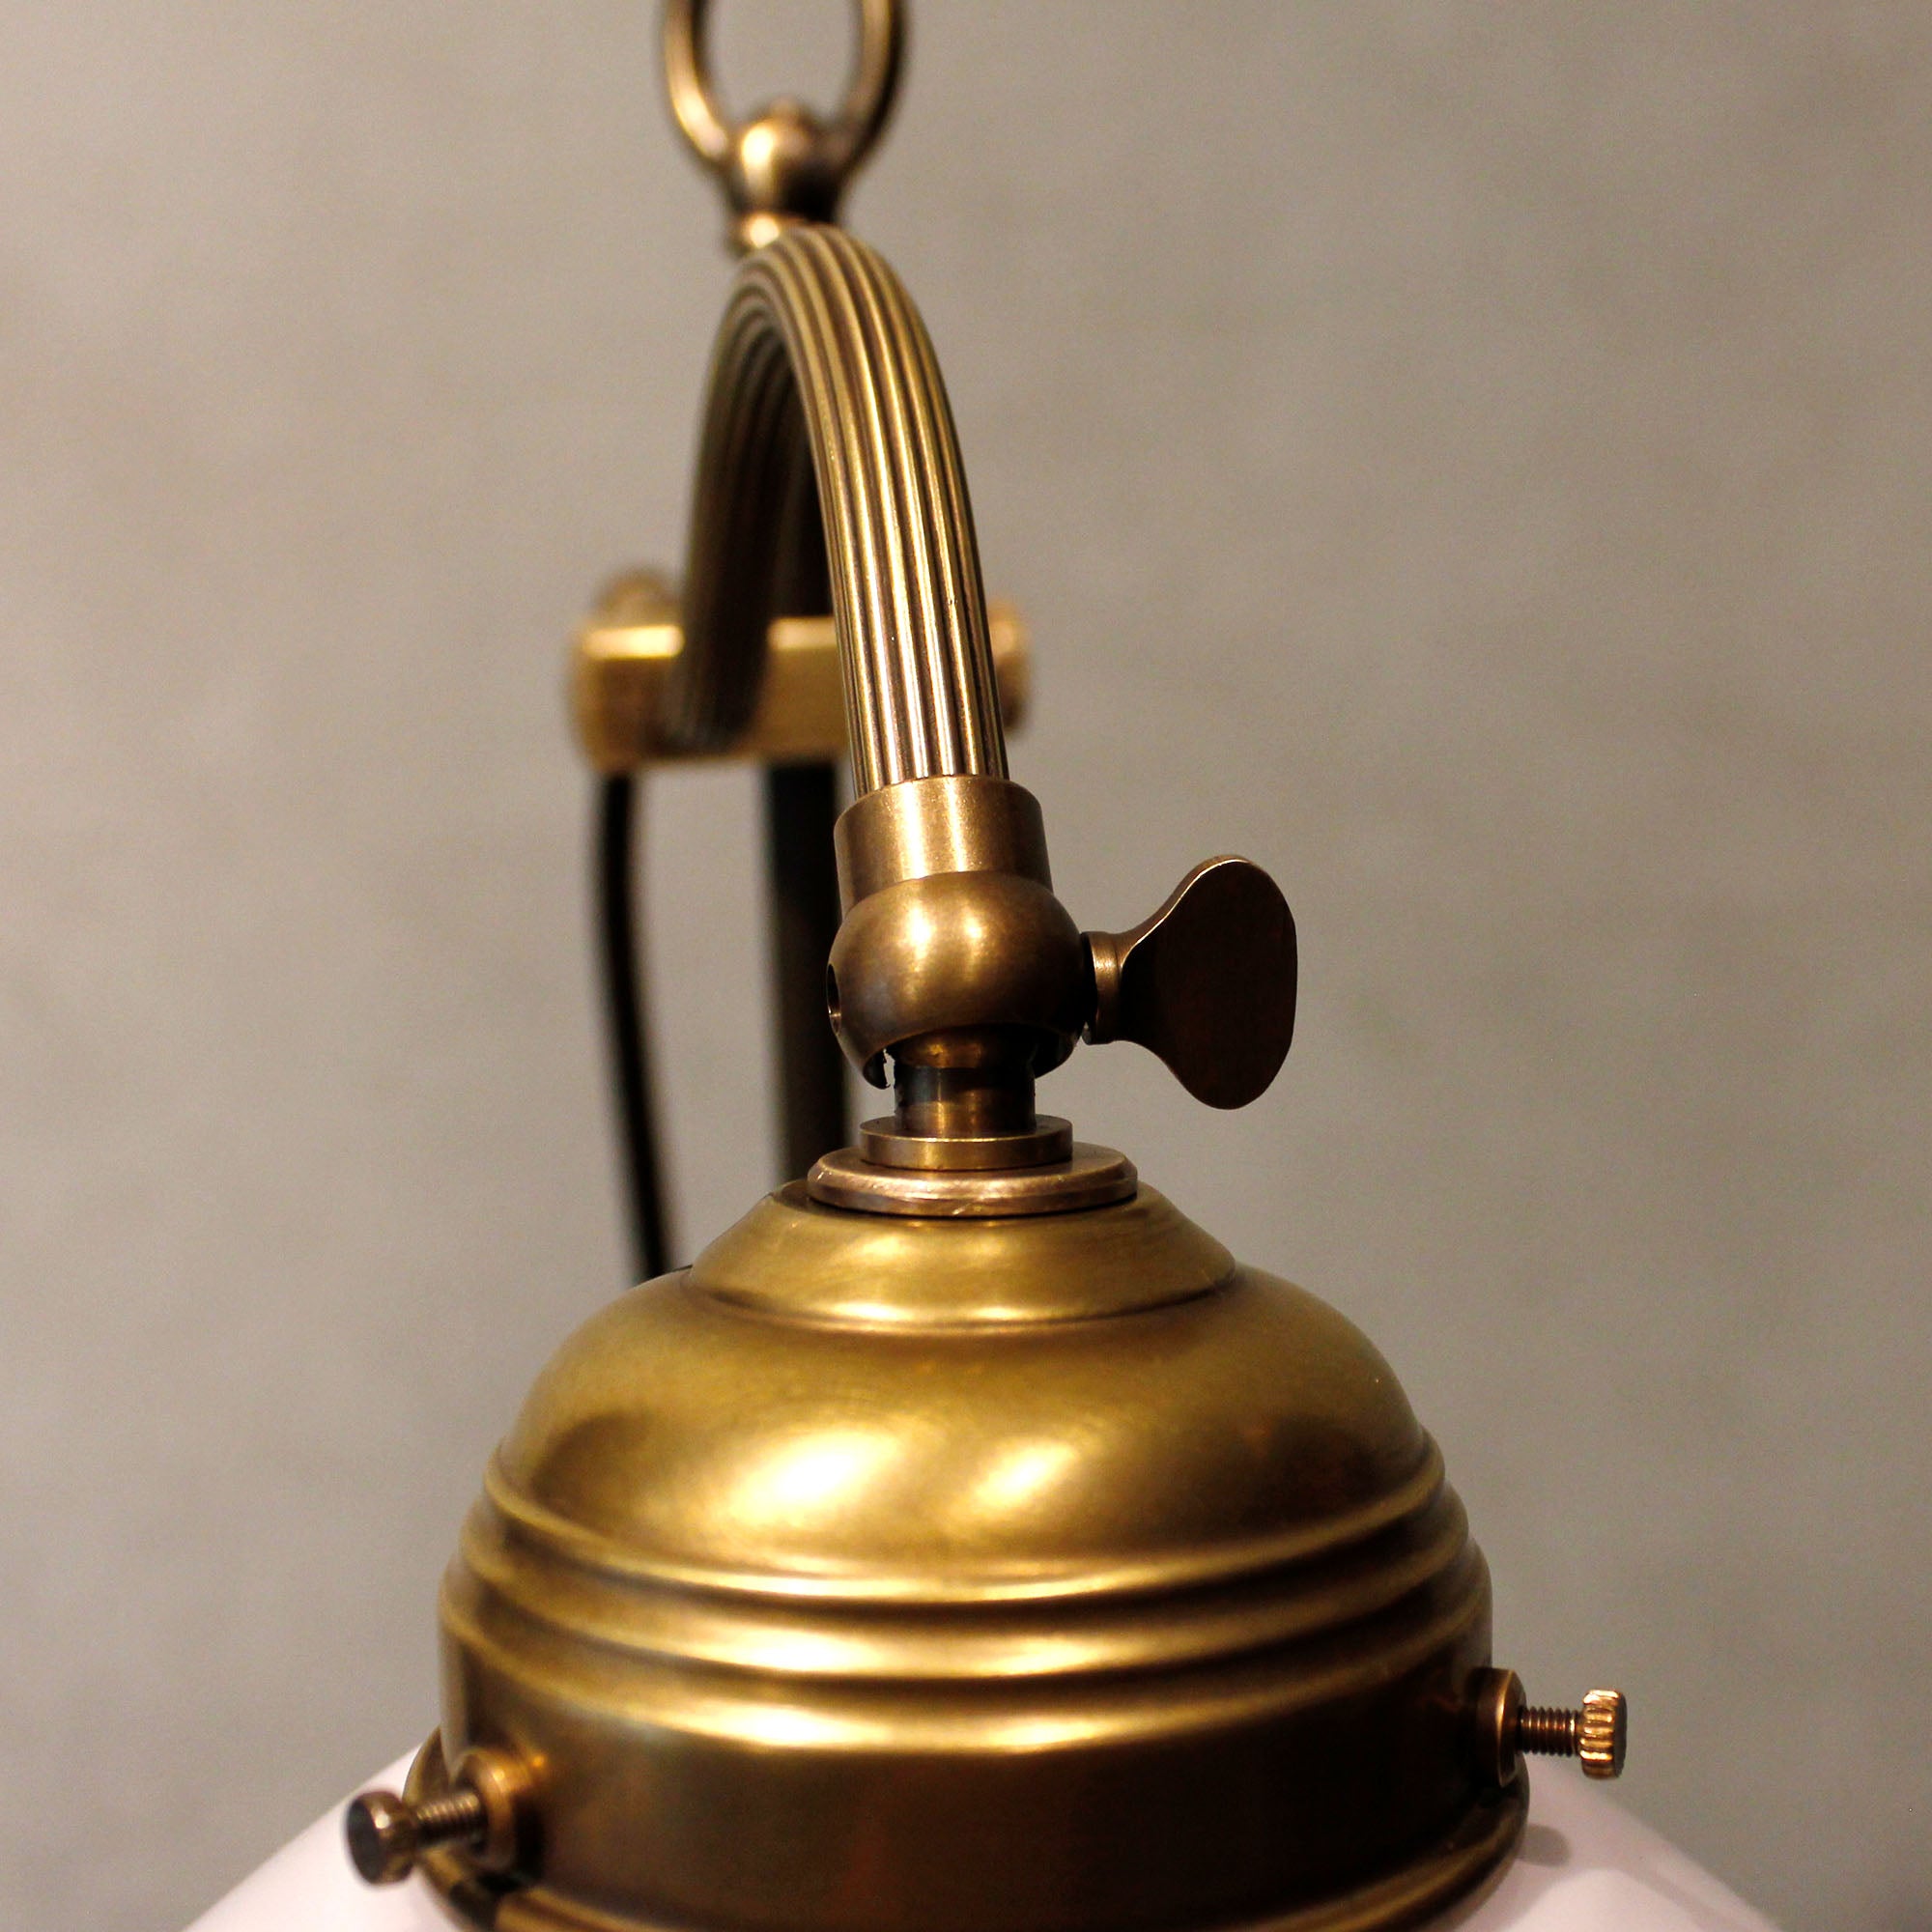 Art Nouveau Table Lamp "Curve"